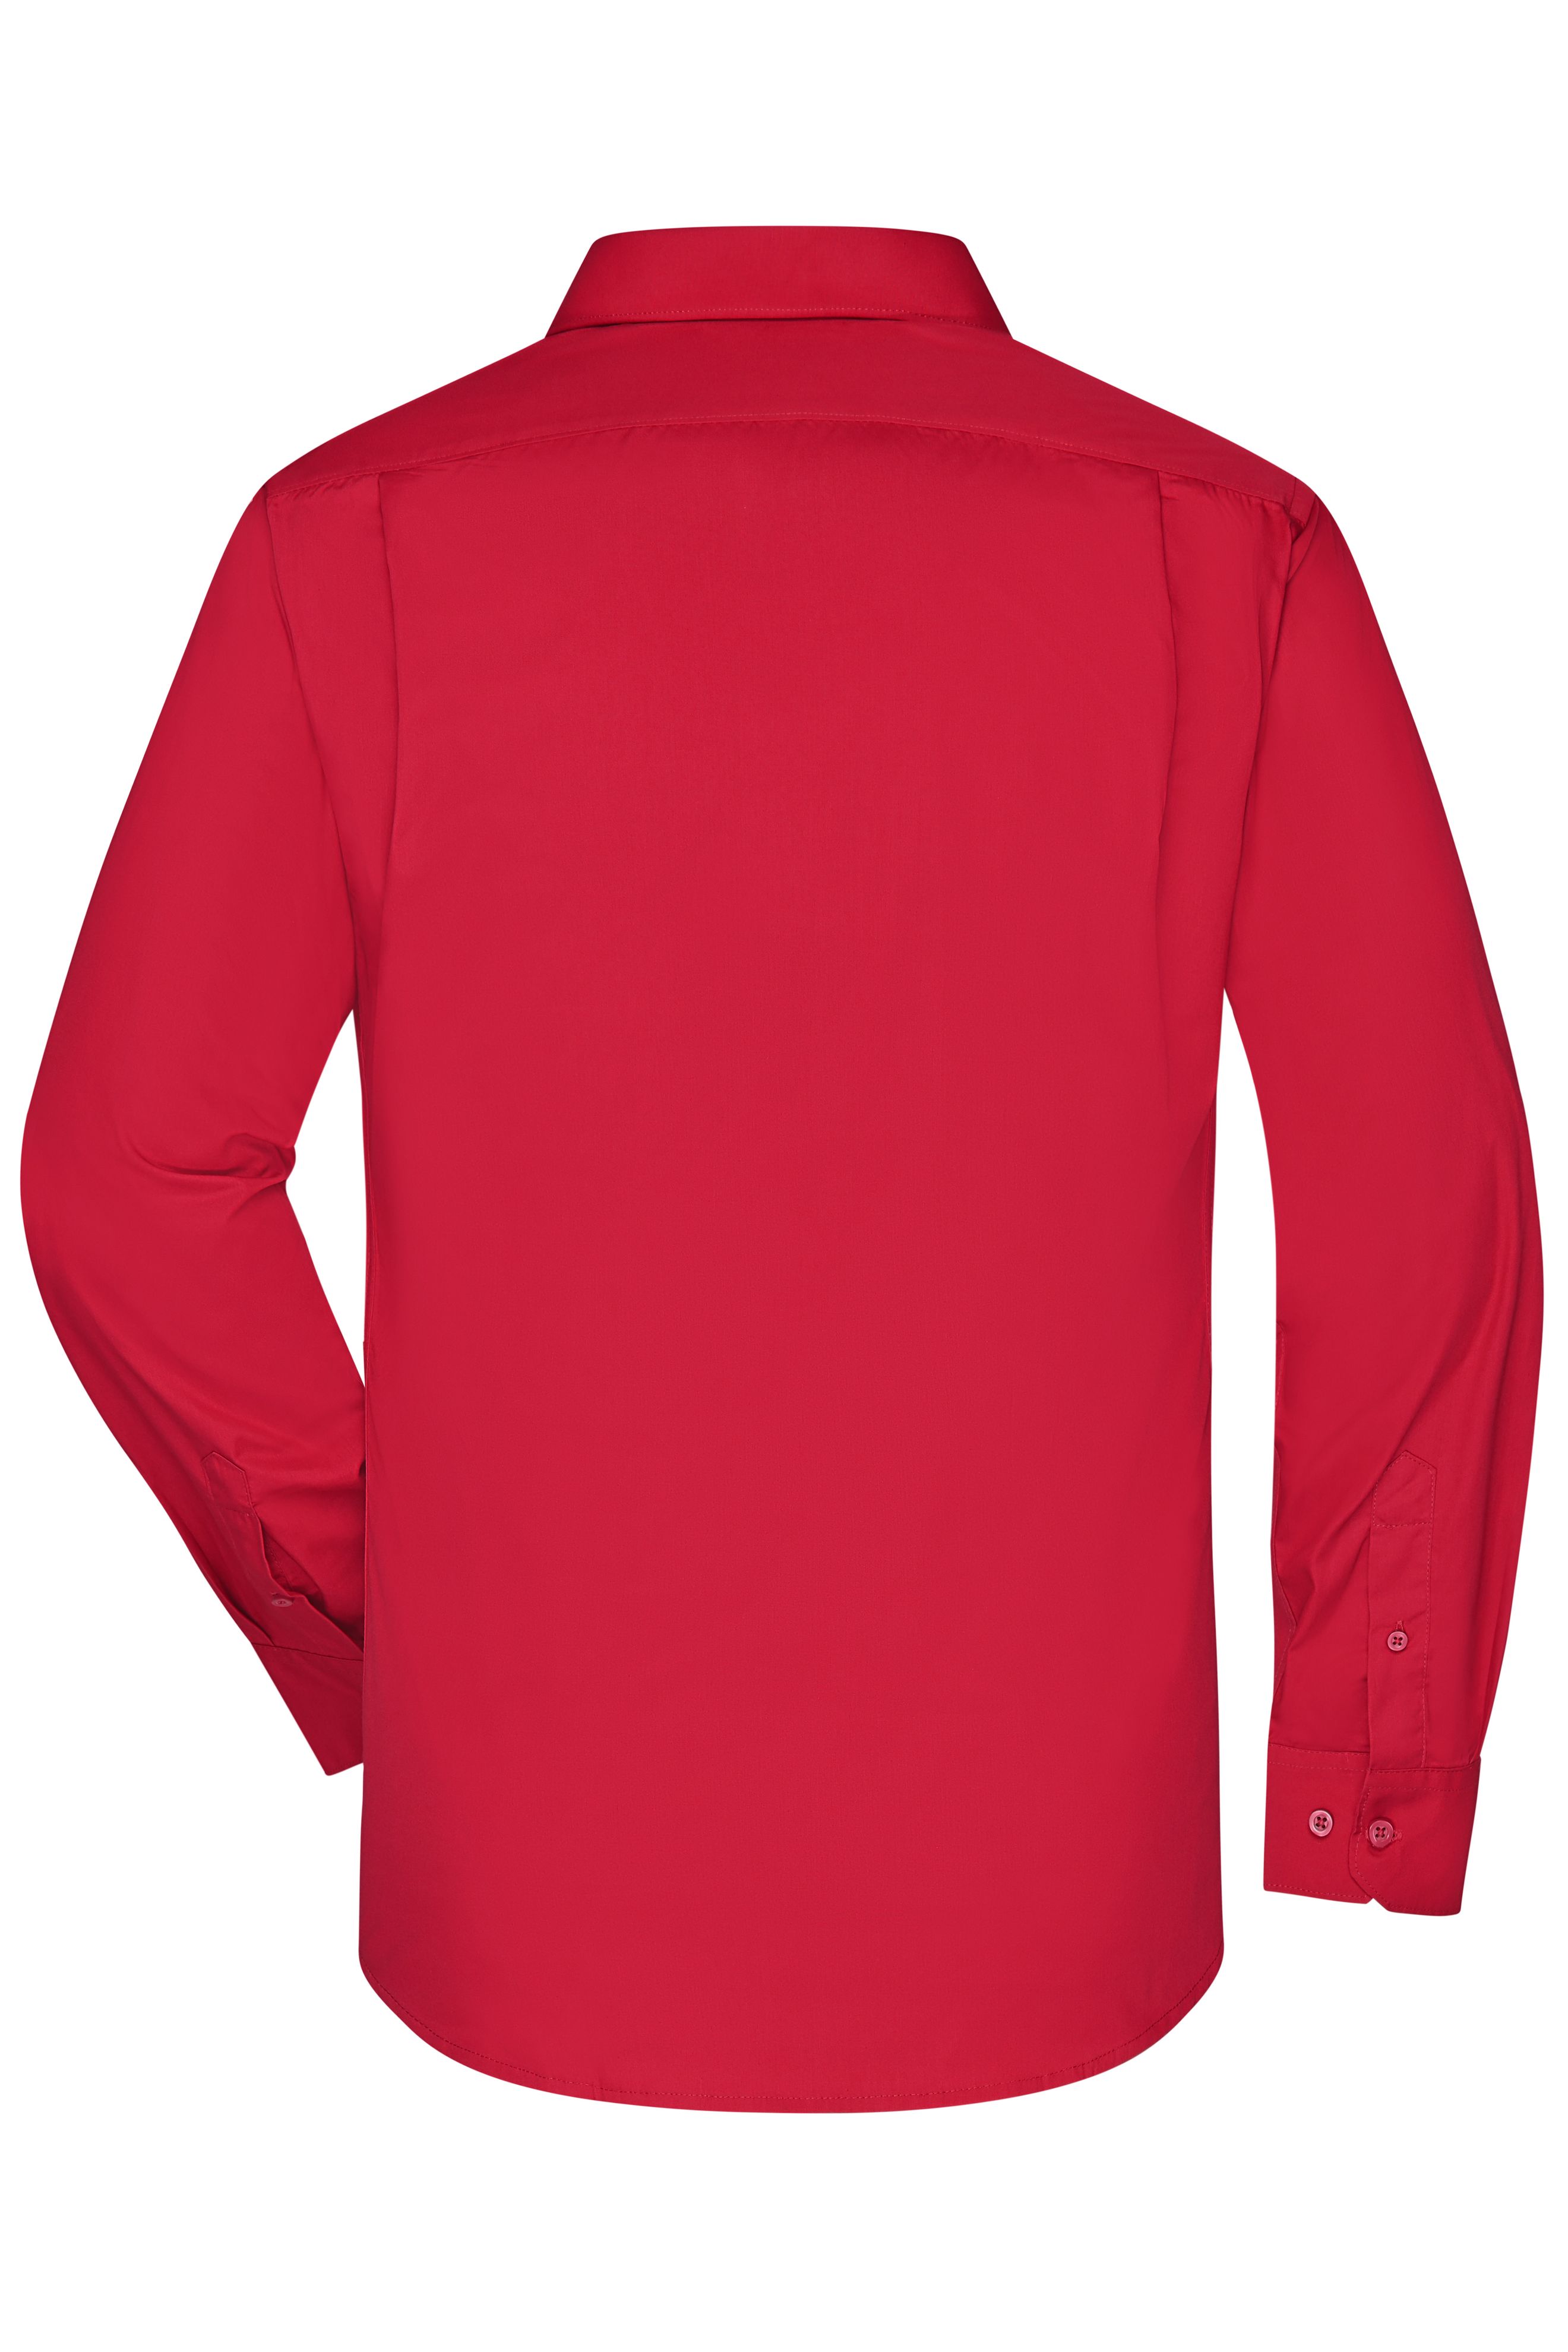 Men's Business Shirt Long-Sleeved JN642 Klassisches Shirt aus strapazierfähigem Mischgewebe